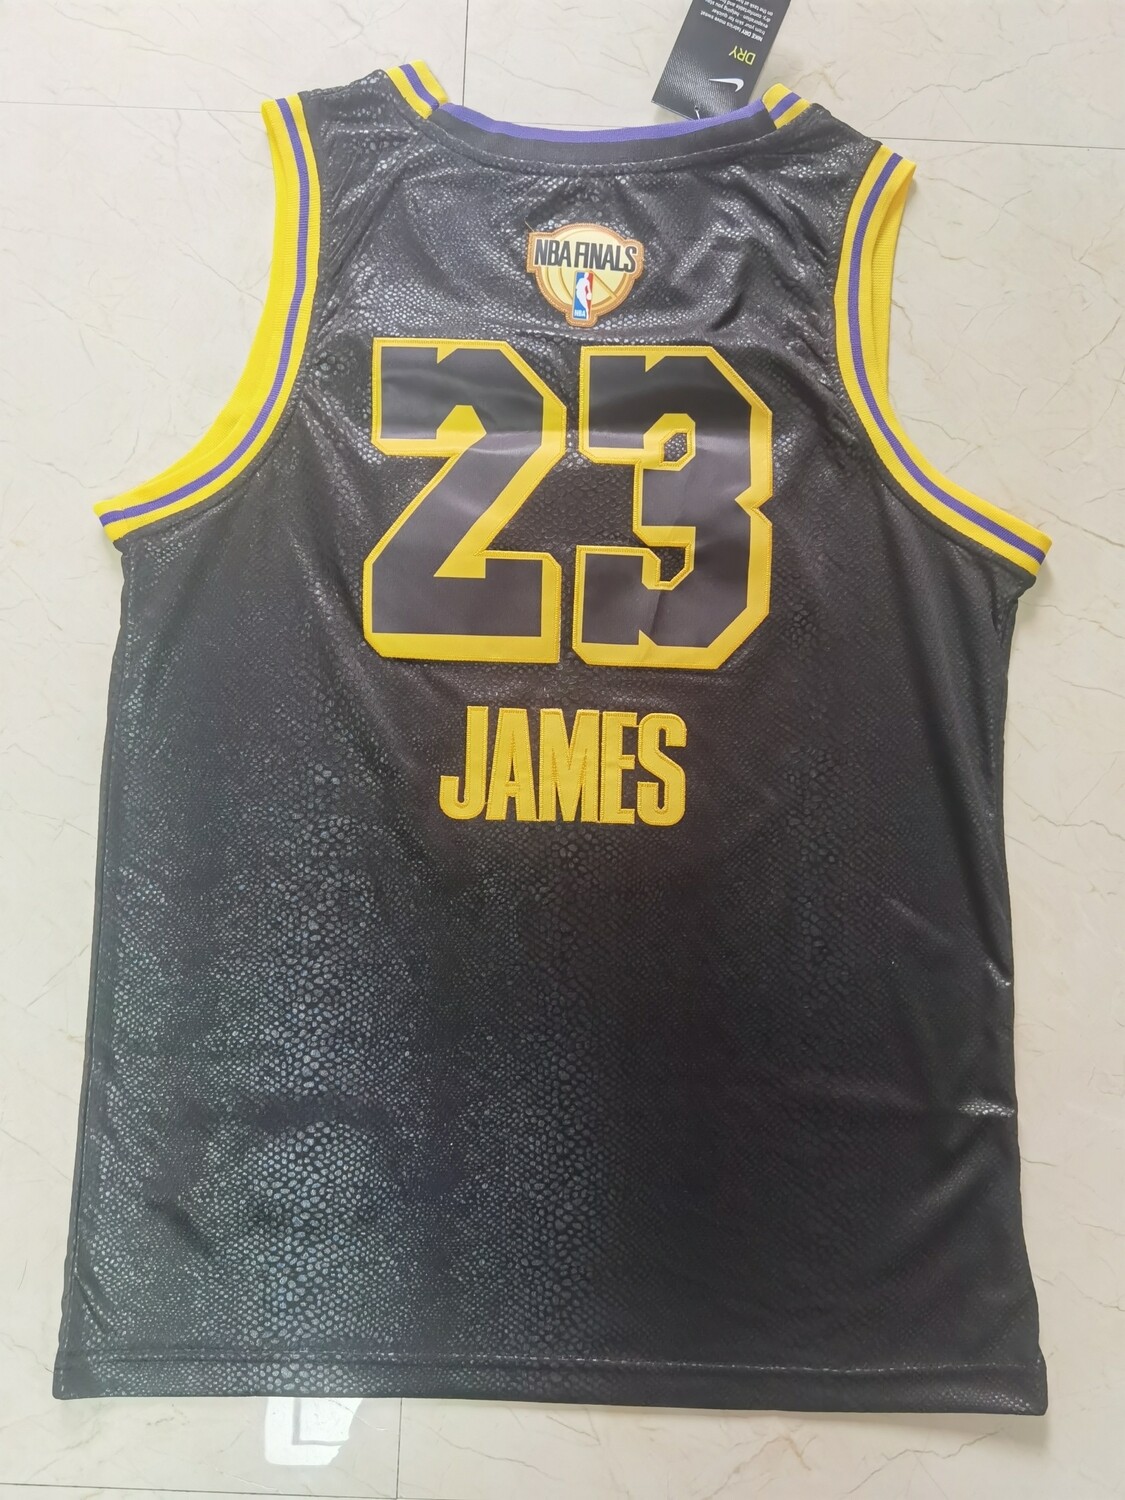 Canotta Lakers NBA finals James #23